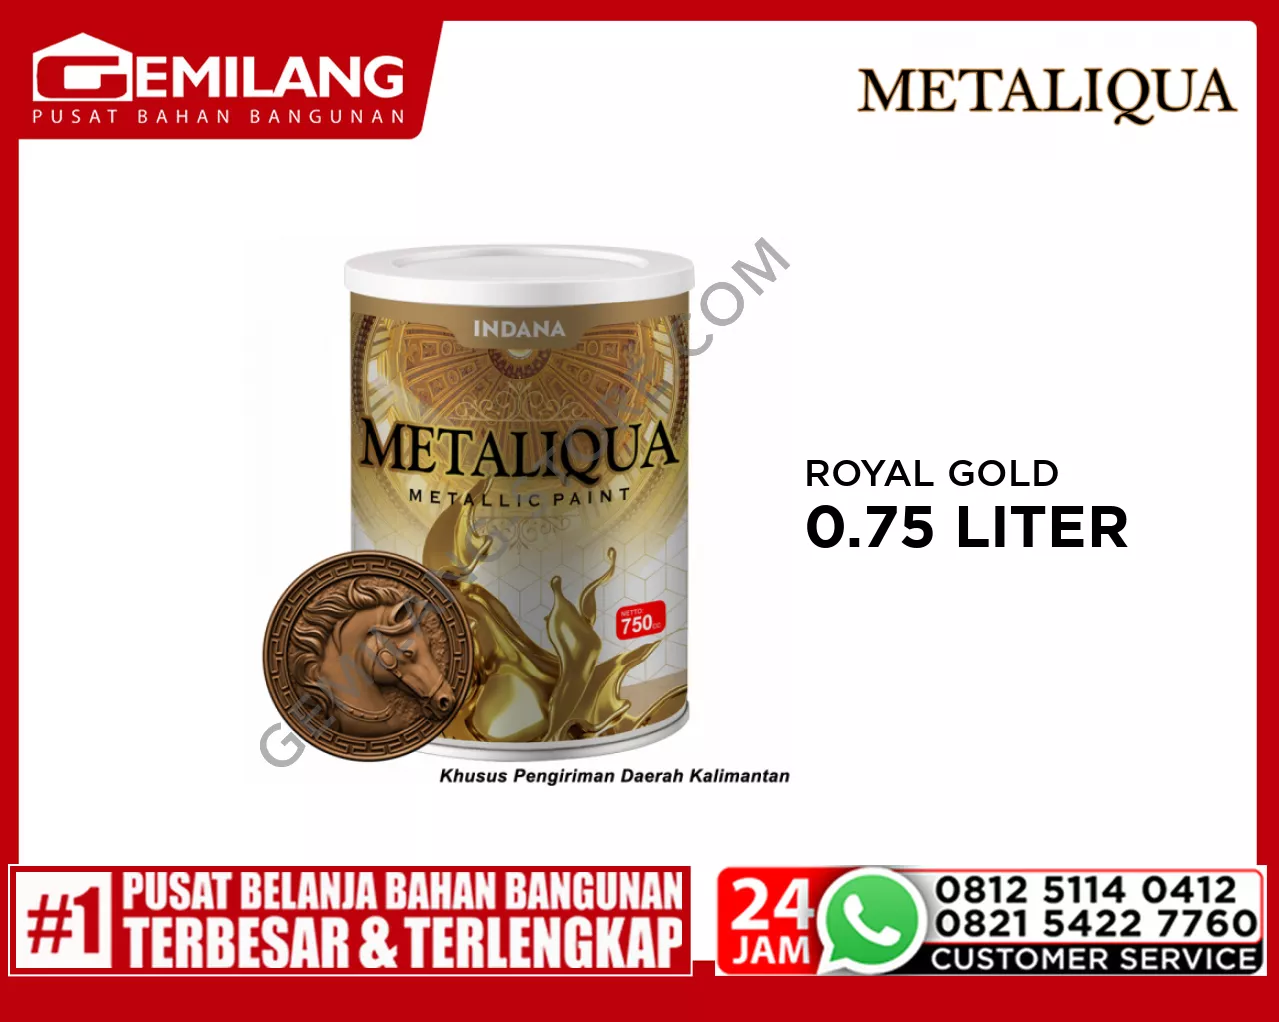 METALIQUA ROYAL GOLD 0.75ltr (1524402)